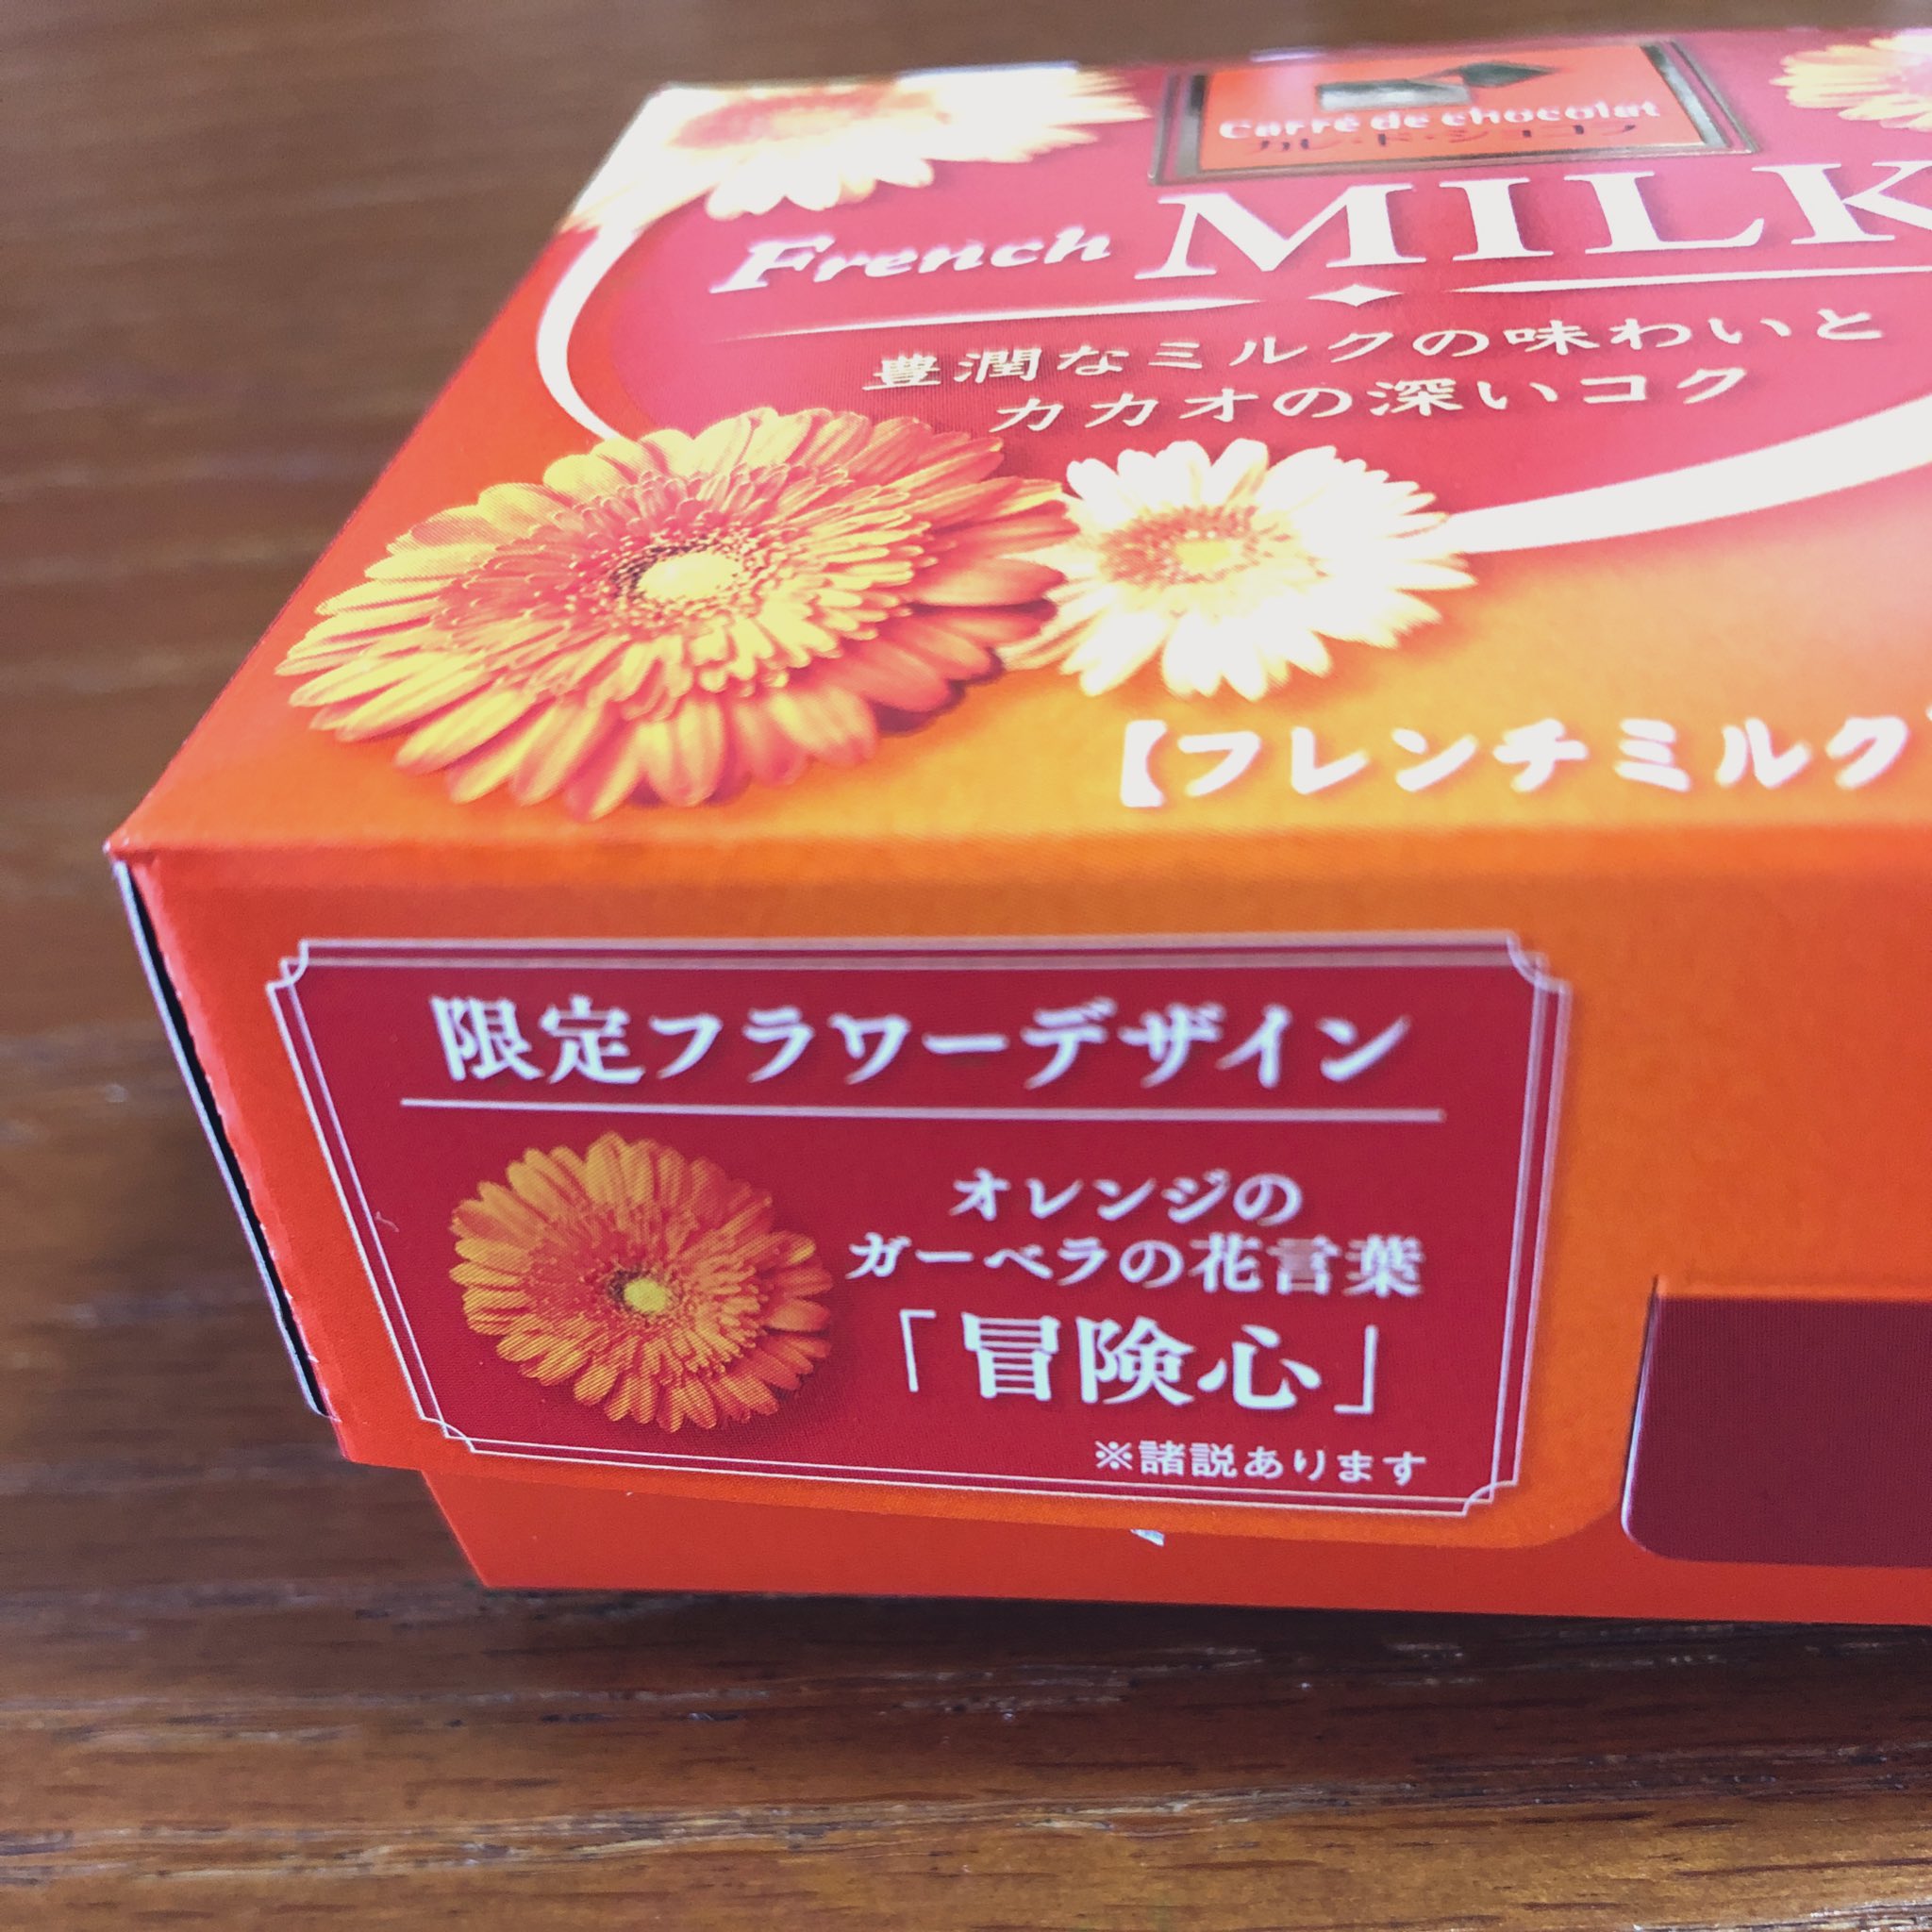 もやし 캰미쿠 チョコのパッケージに花言葉が書いてたので母に オレンジのガーベラの花言葉って何か分かる ぼ で始まる 漢字3文字の言葉 って言ったら 忘年会 って返ってきた